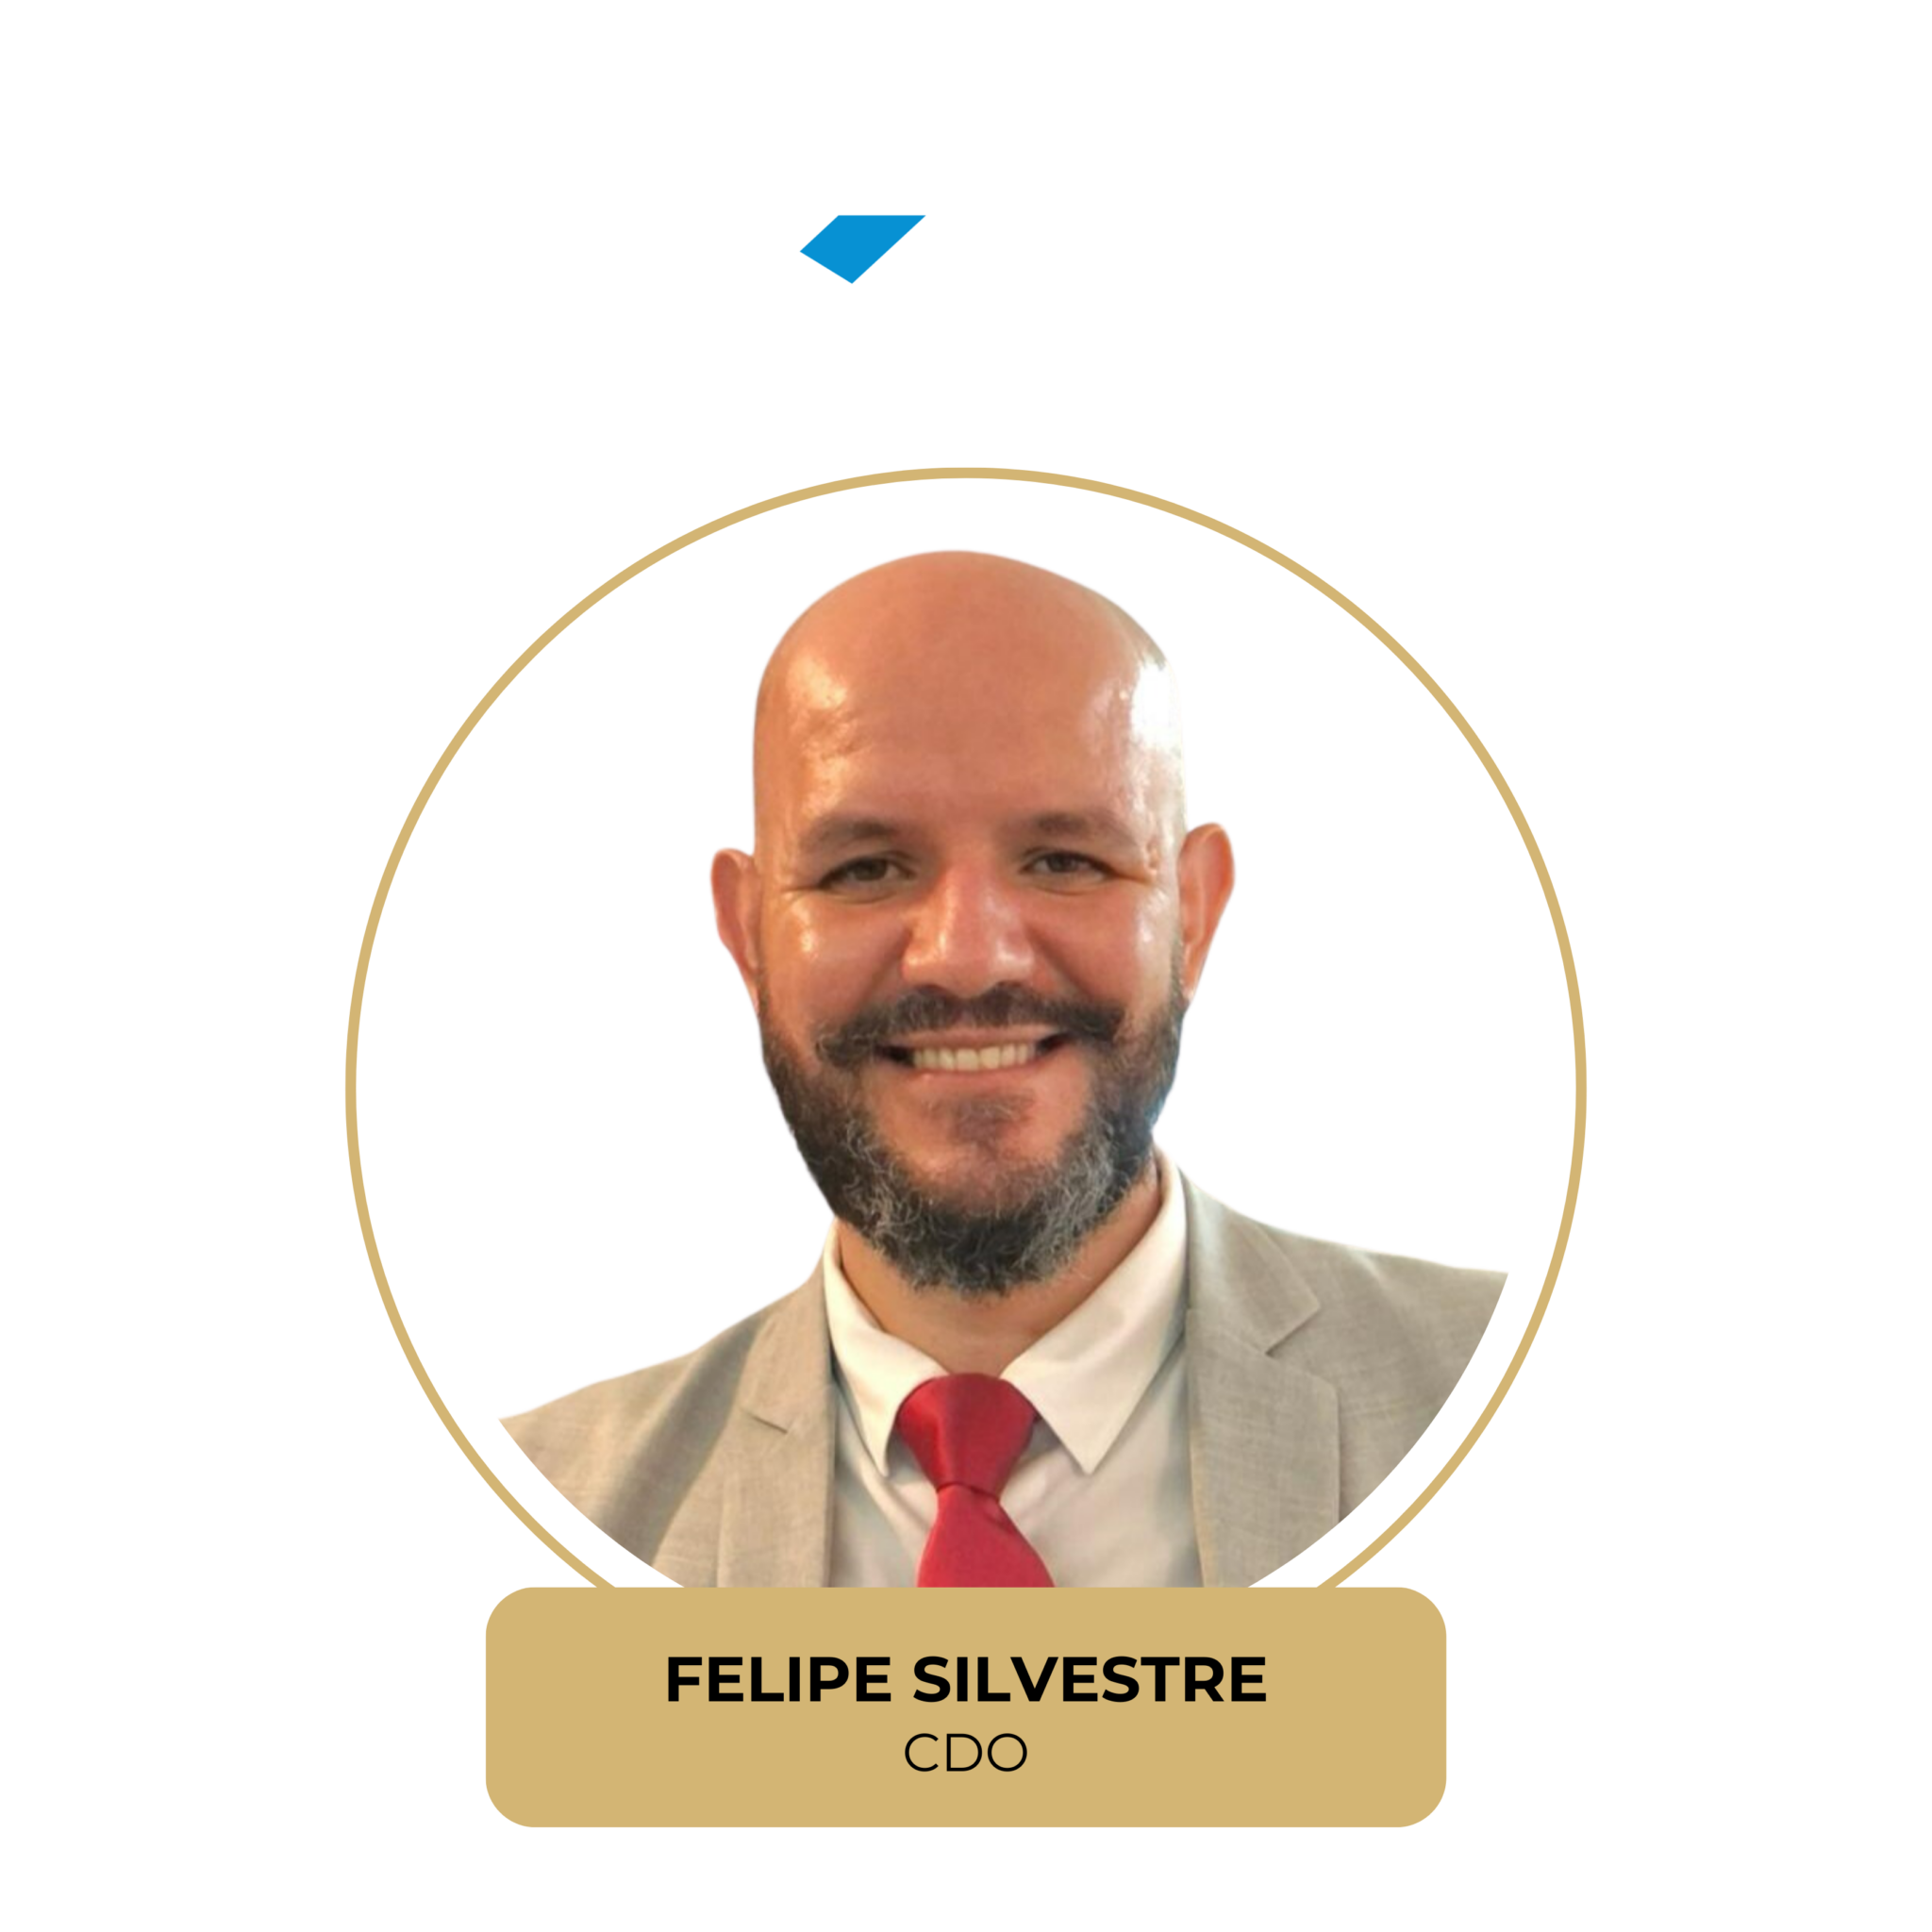 Felipe Silvestre -FGV